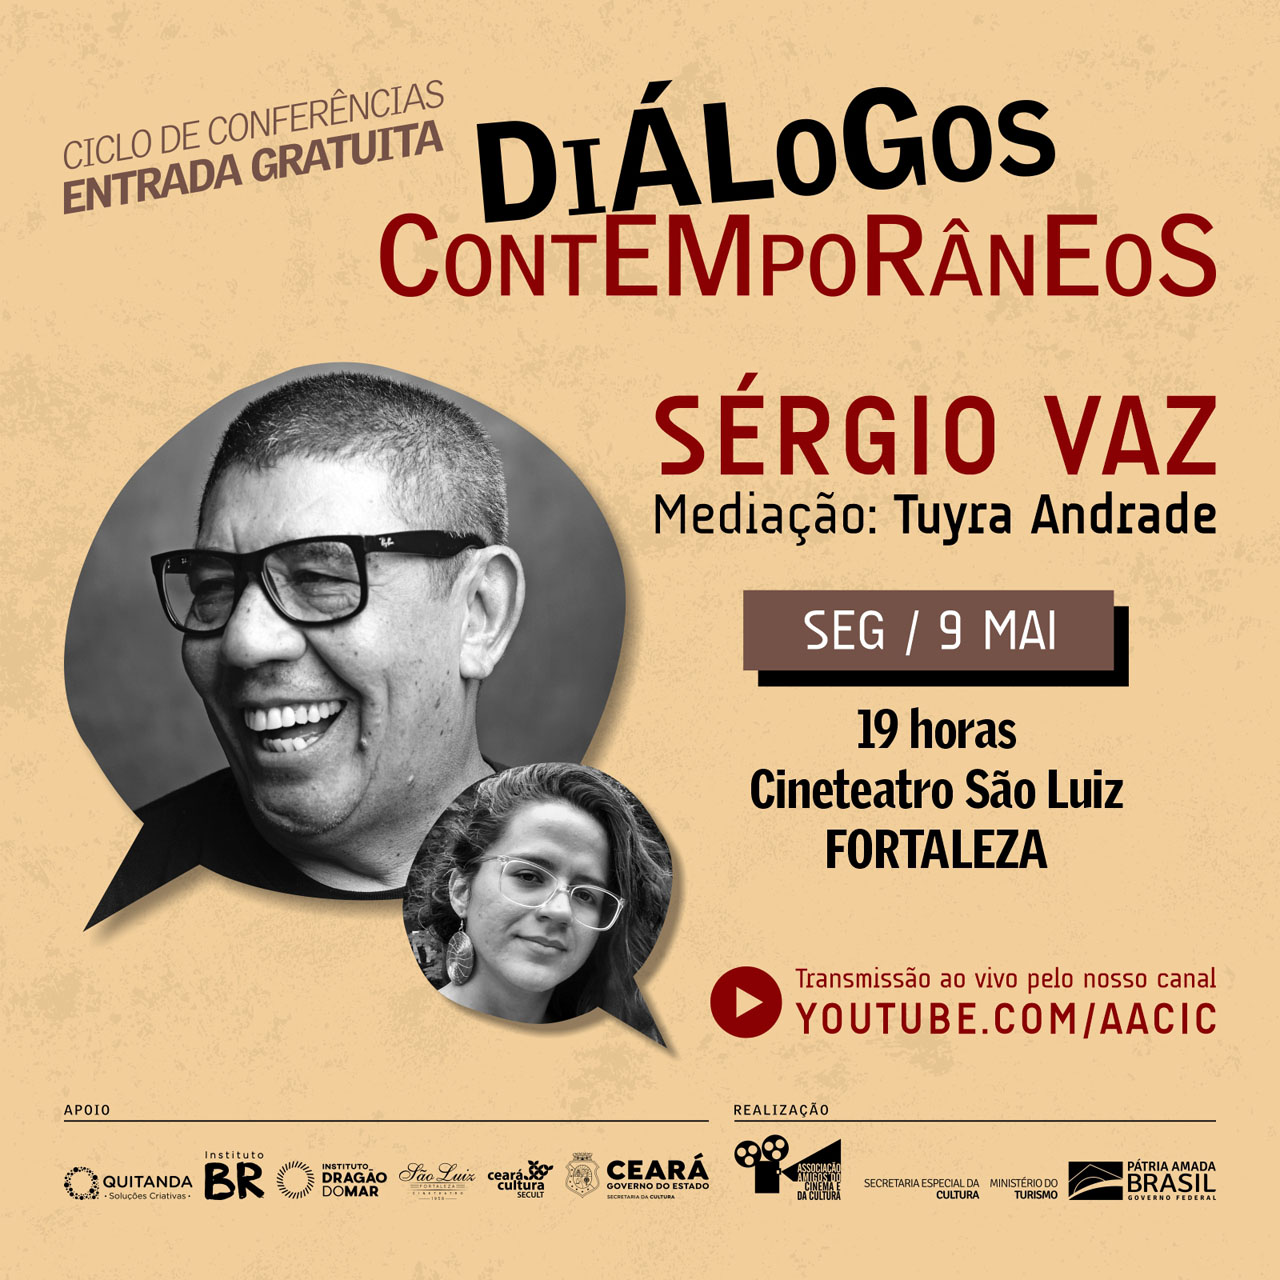 Diálogos Contemporâneos apresentam Sérgio Vaz